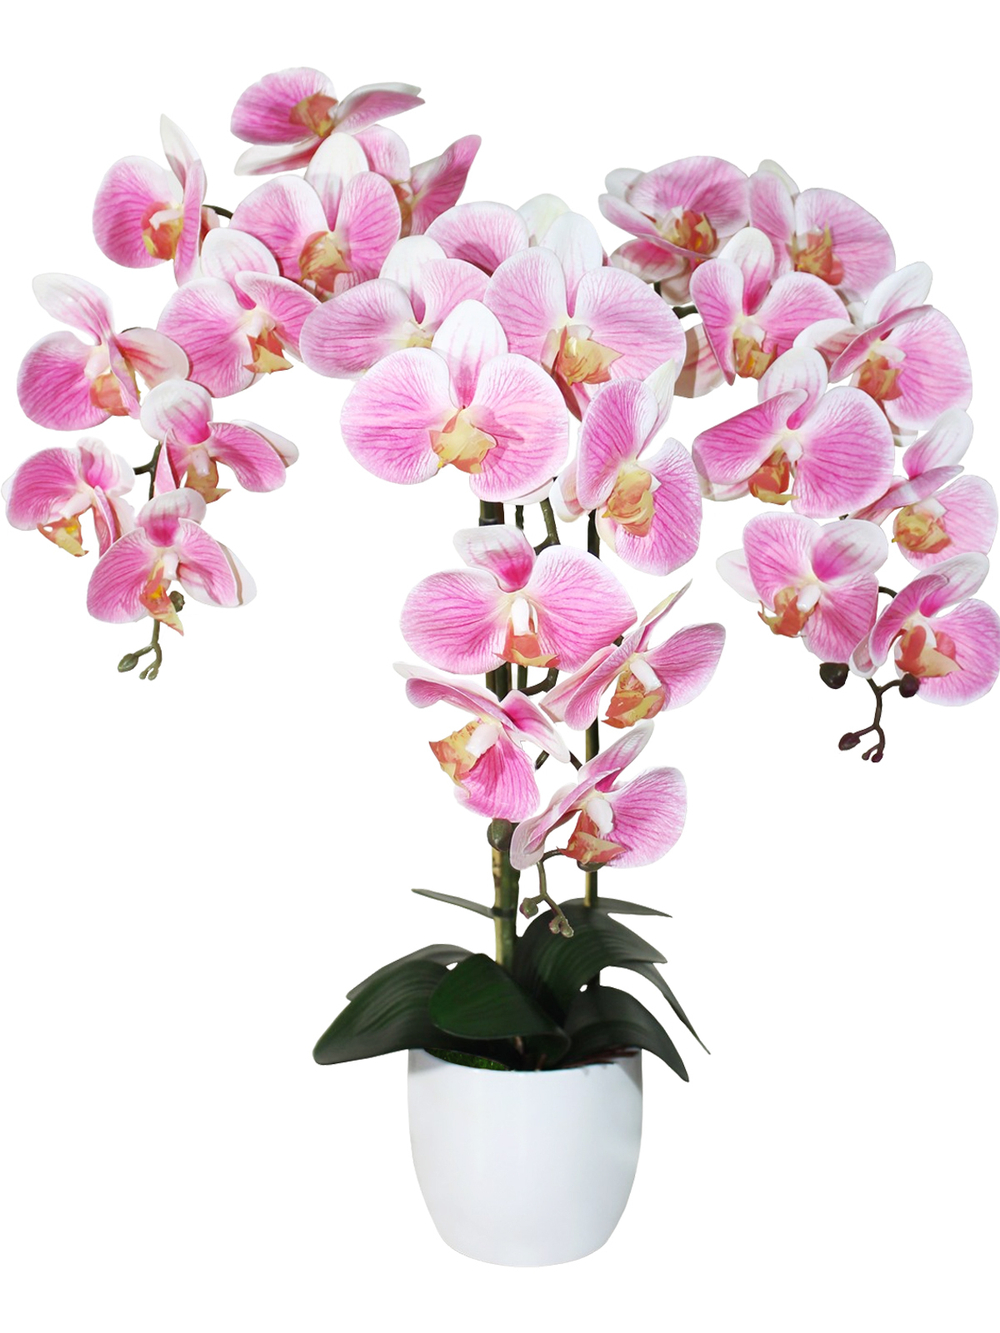 Искусственные орхидеи Фаленопсис 3 ветки бело-розовые латекс 65см в кашпо